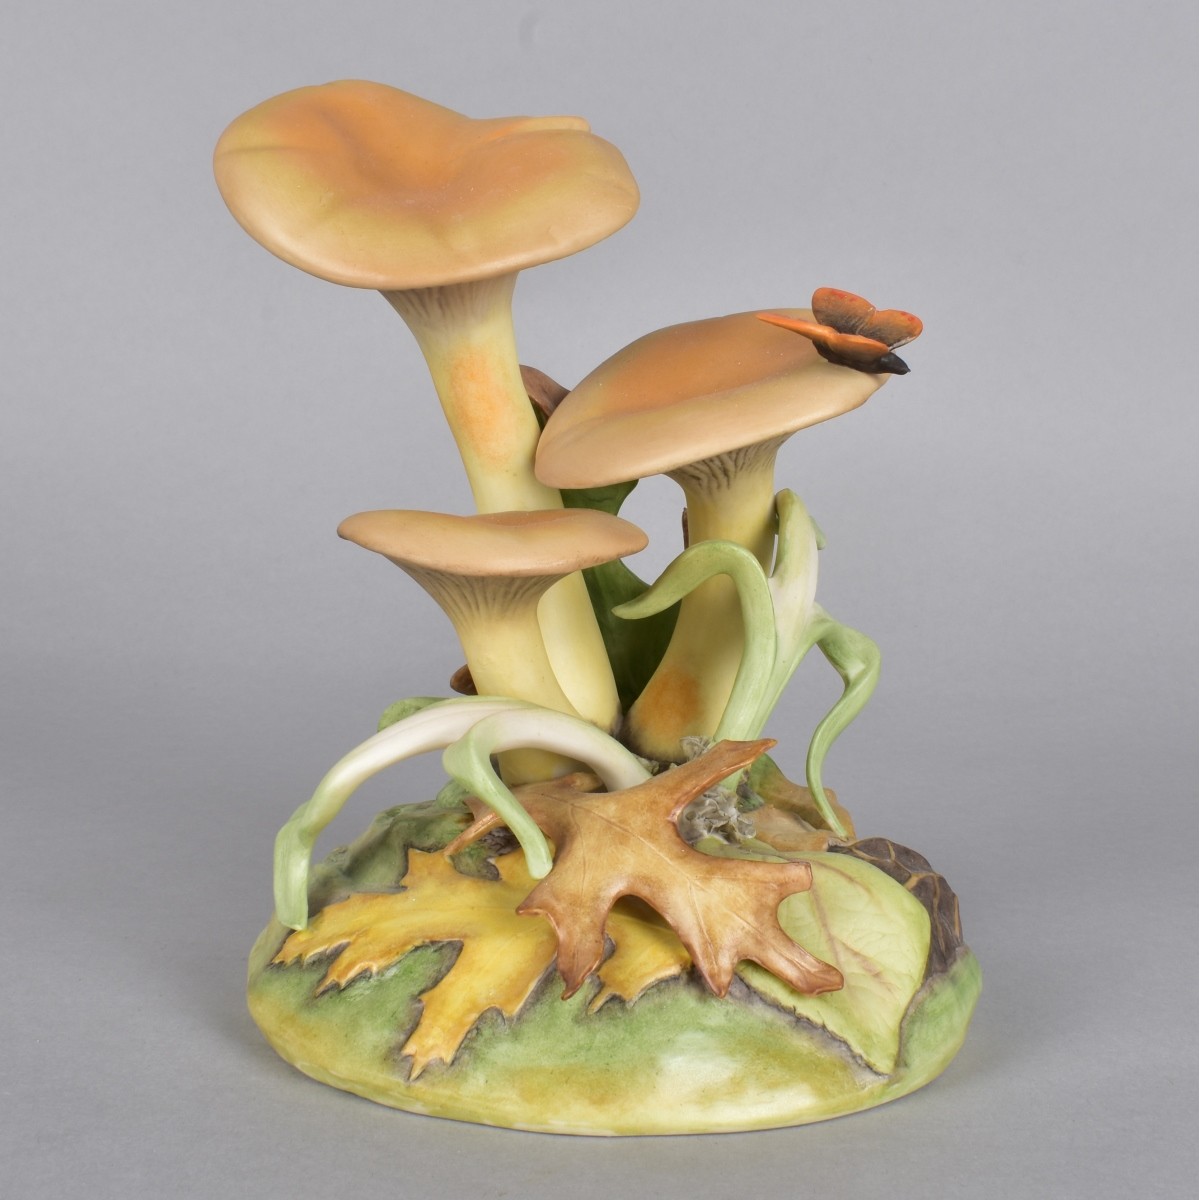 Cybris Jack o Lantern Mushroom Figurine